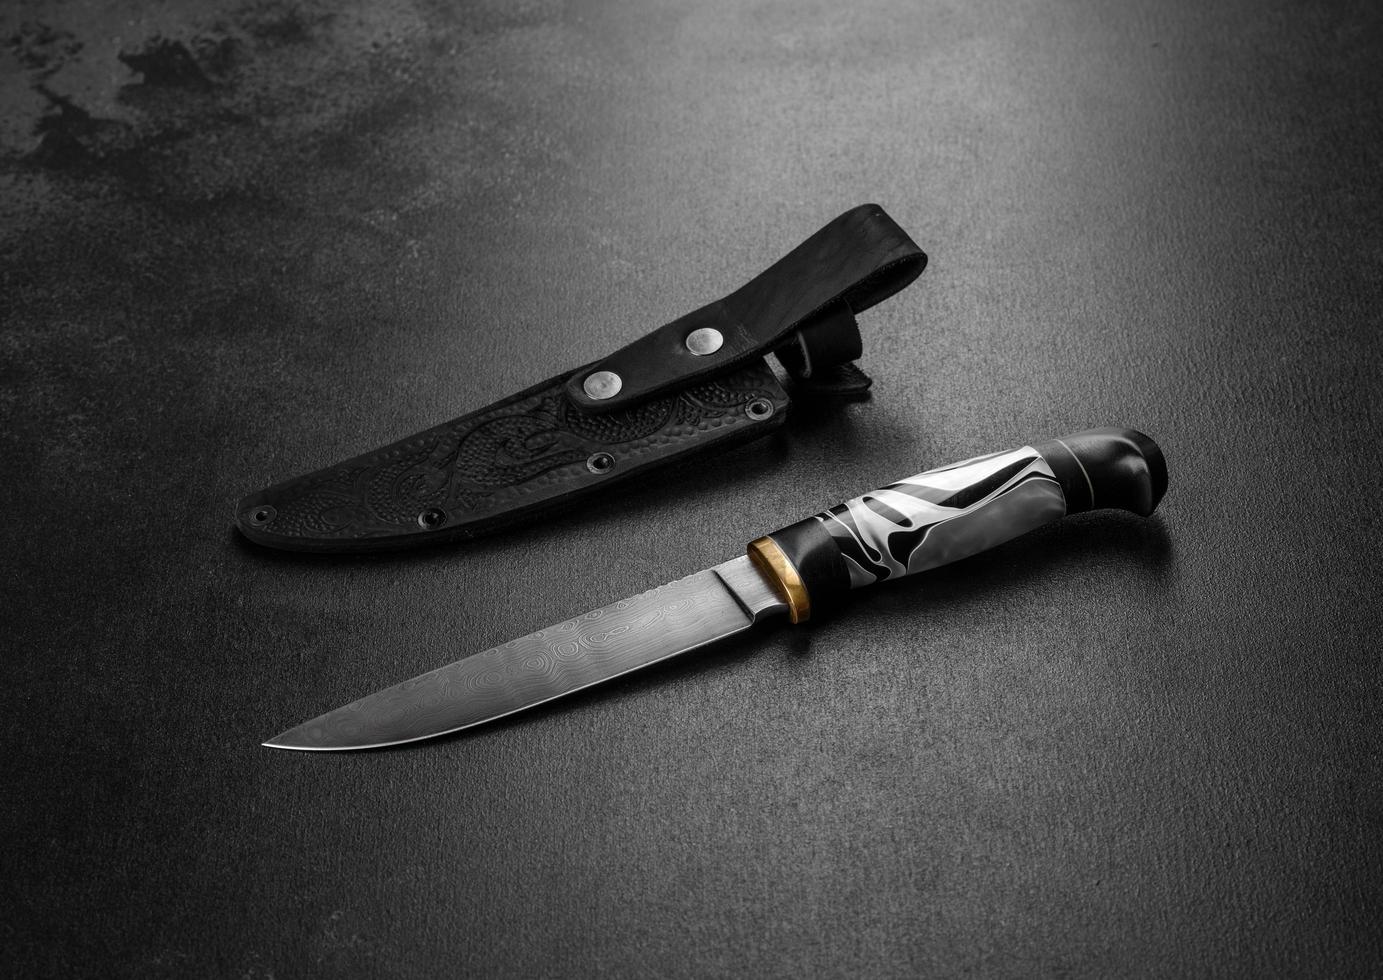 handgjord vacker jaktkniv med ett skarpt grått blad foto